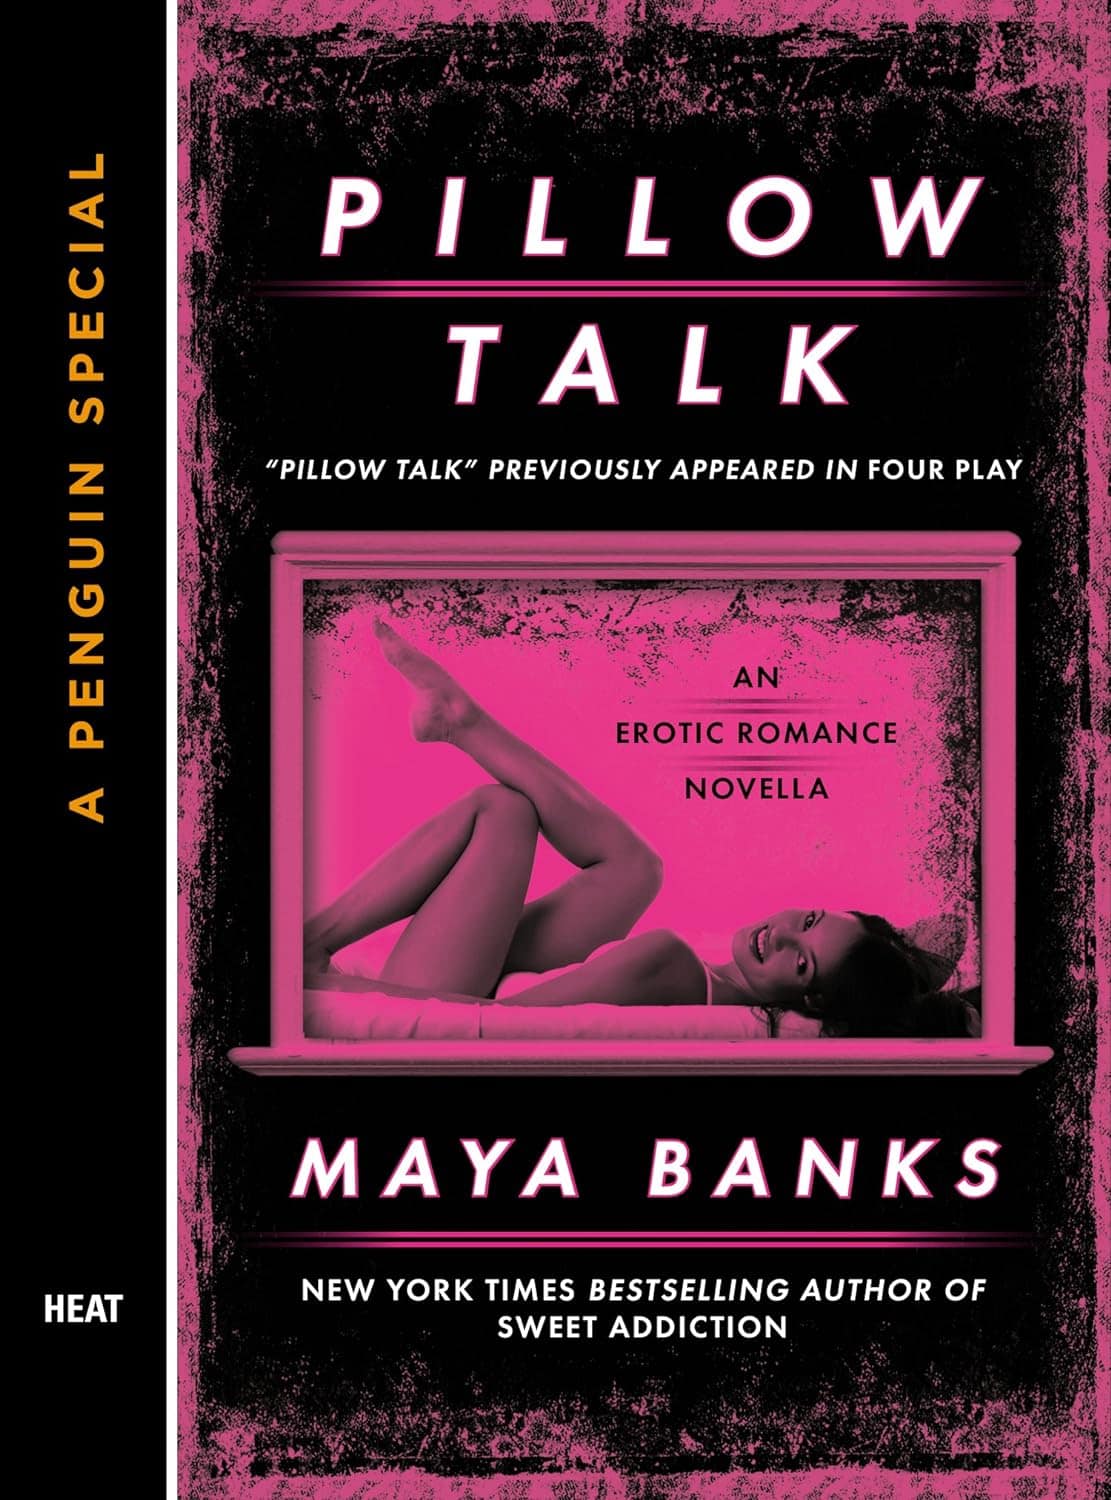 Pillow Talk by Maya Banks